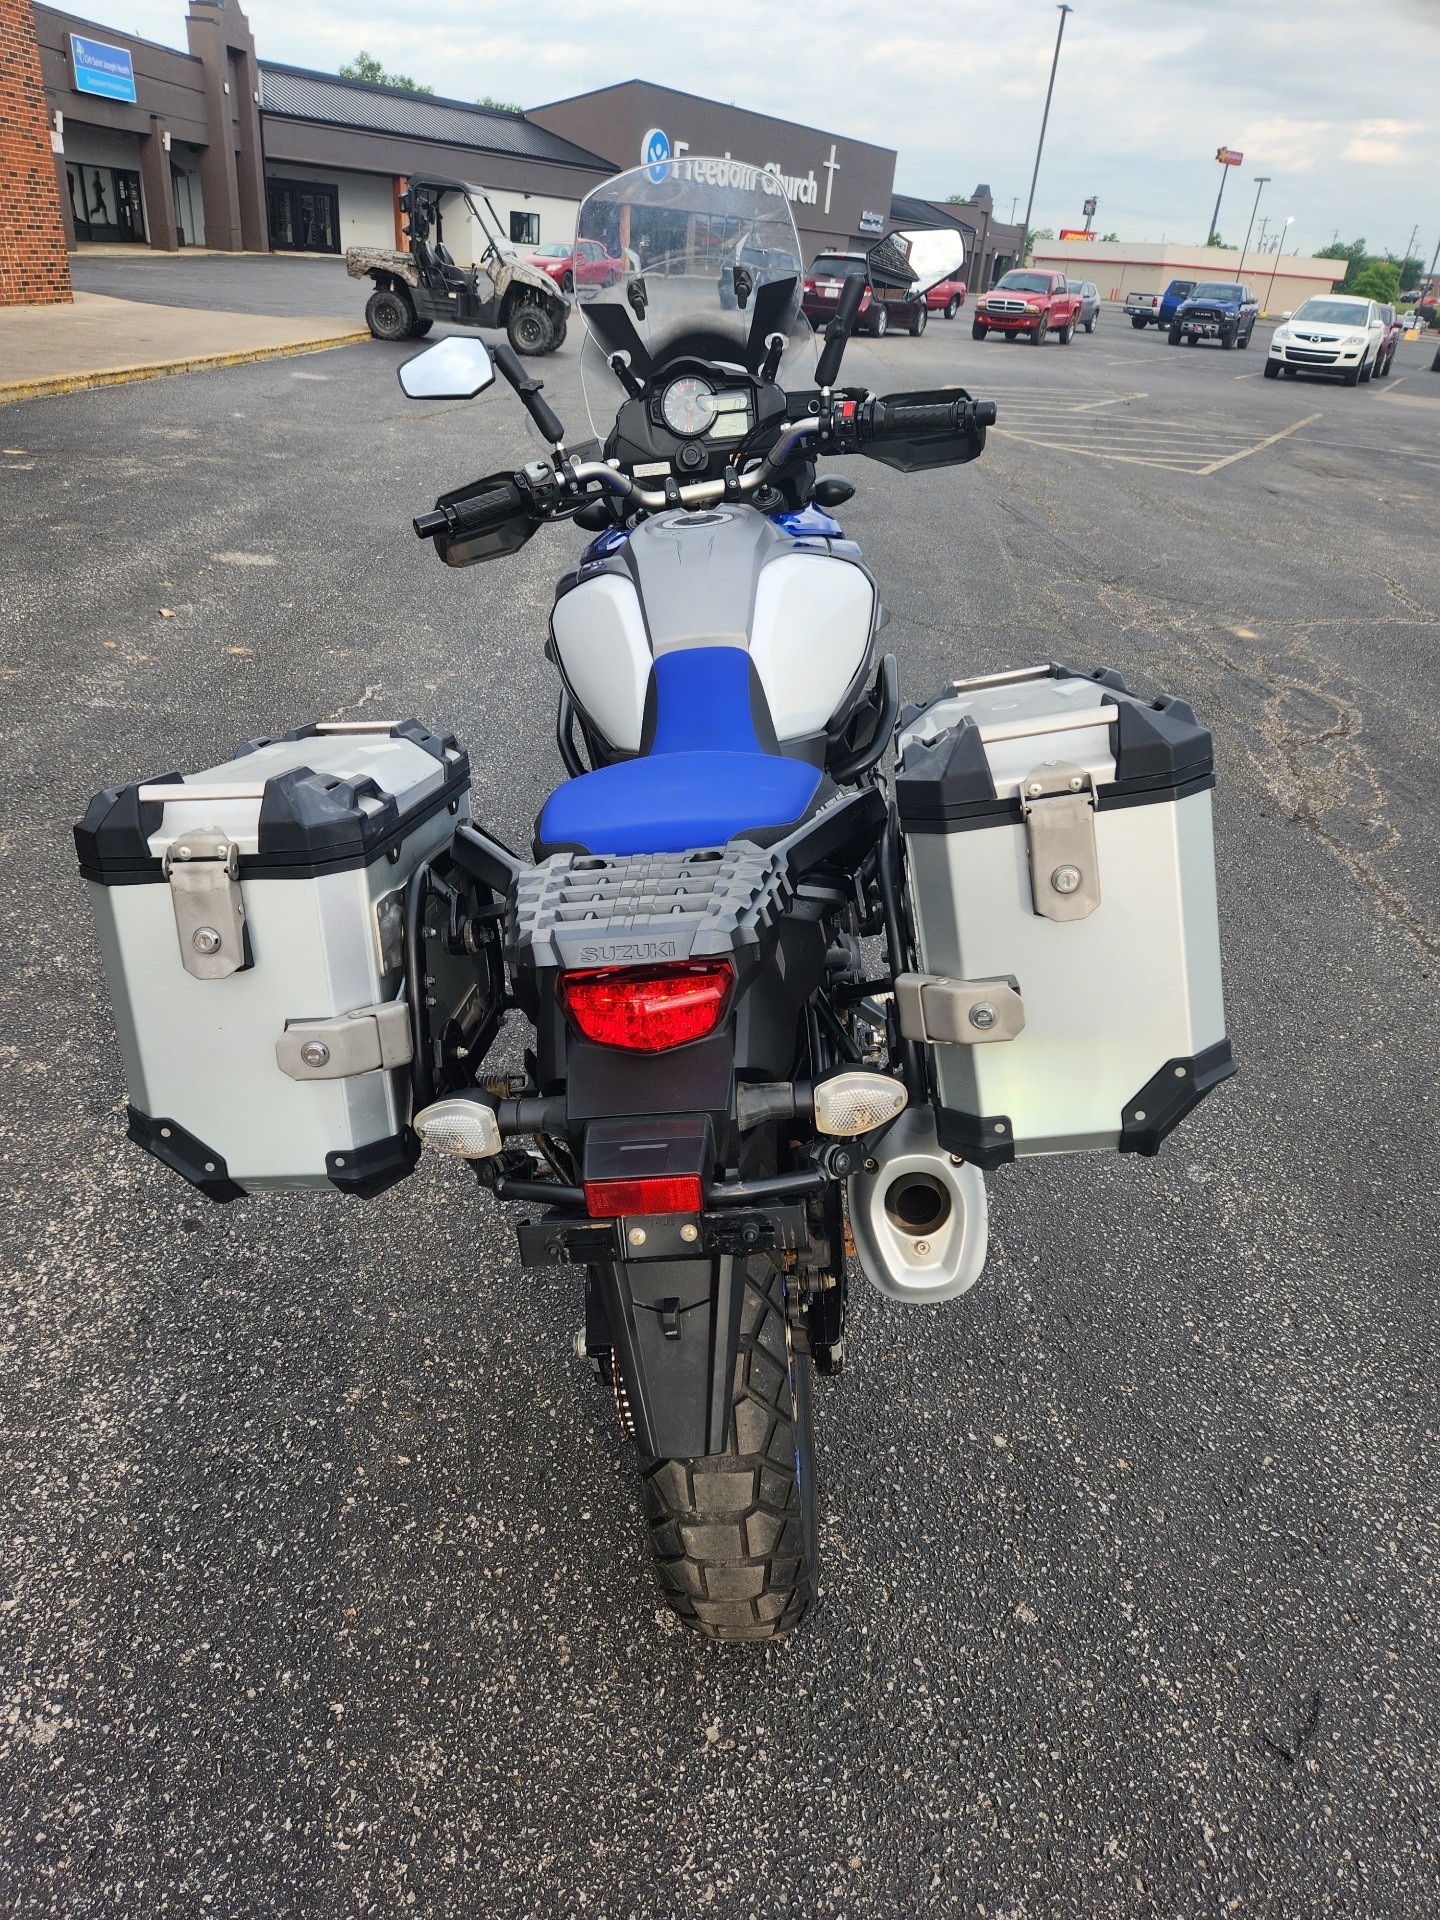 2019 Suzuki V-Strom 1000XT Adventure in Mount Sterling, Kentucky - Photo 4